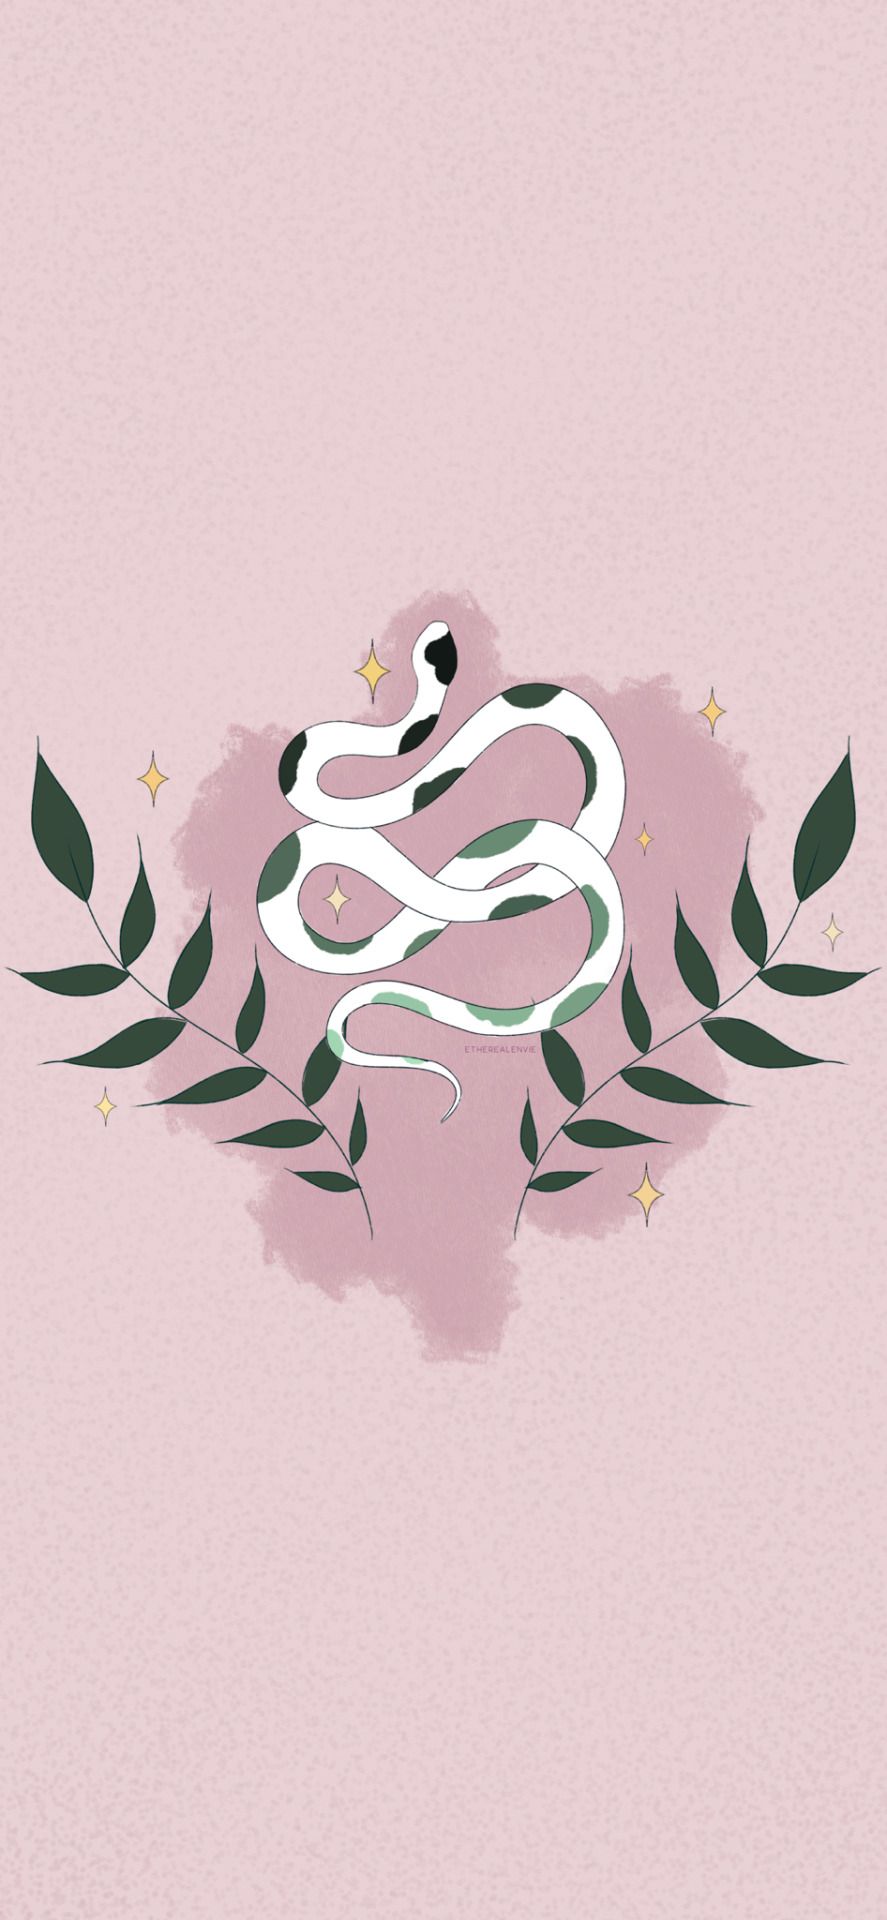 A snake illustration on a pink background - Snake